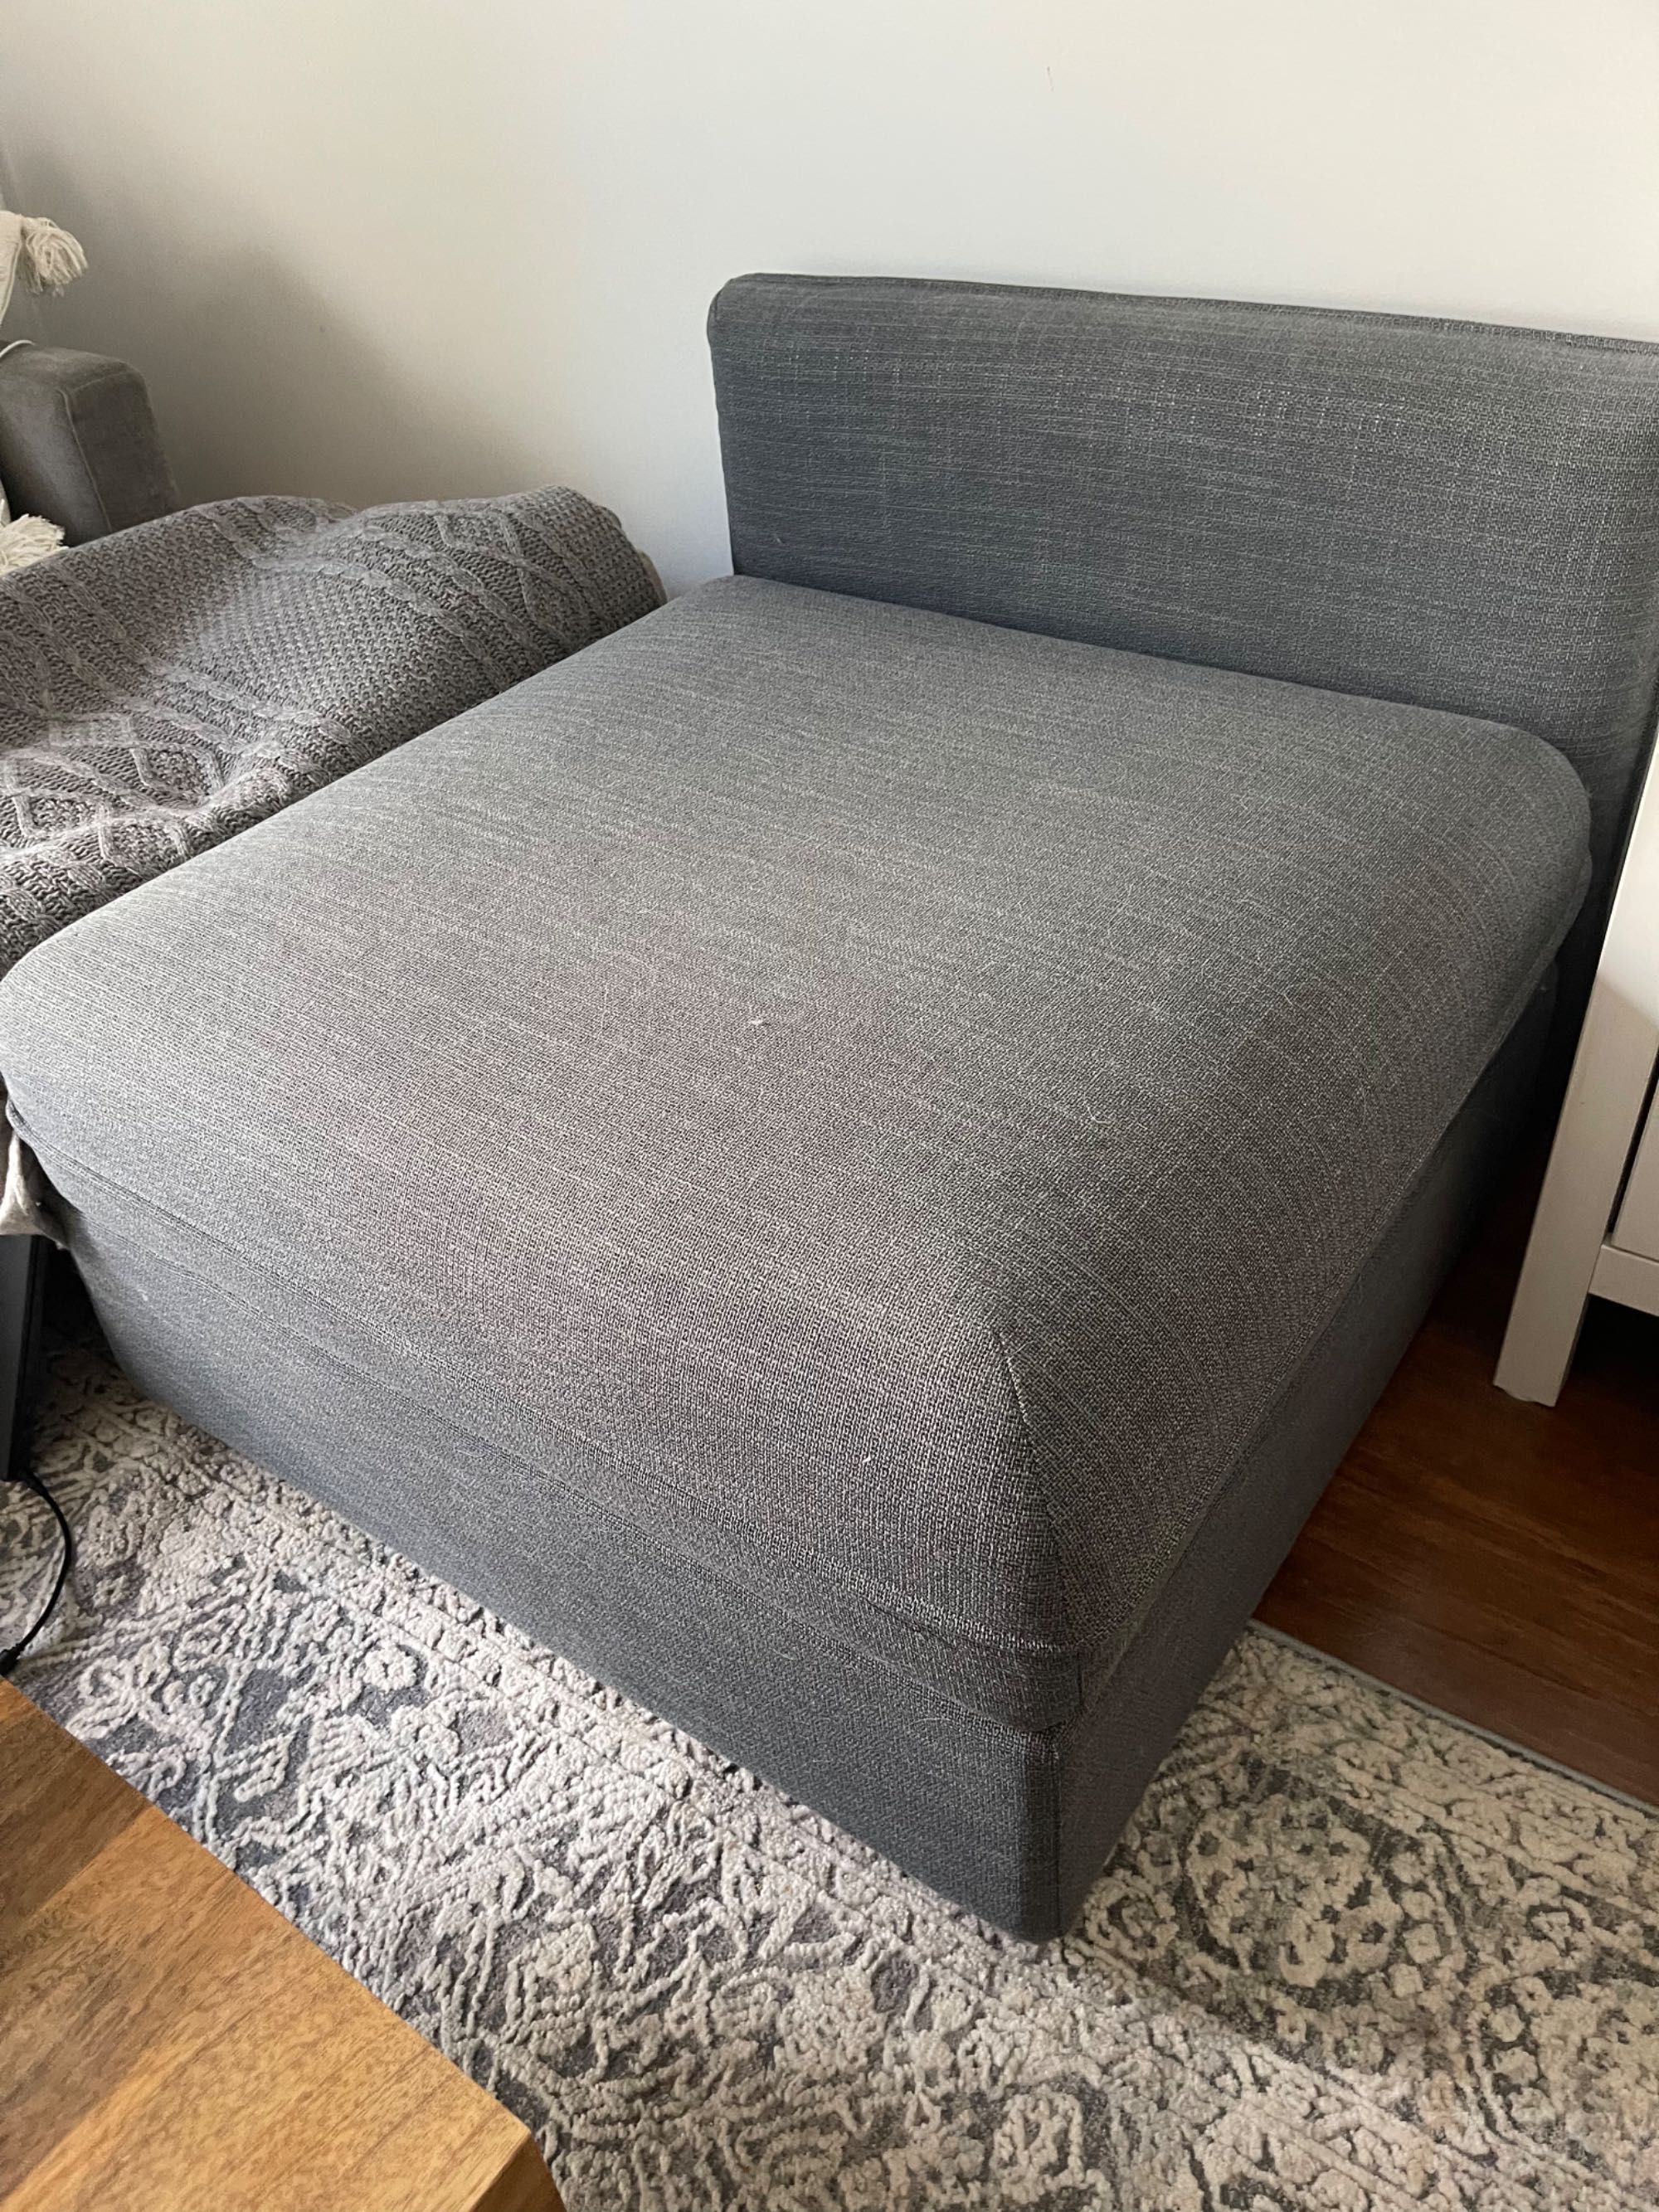 Ikea fotel, sekcja lub pufa